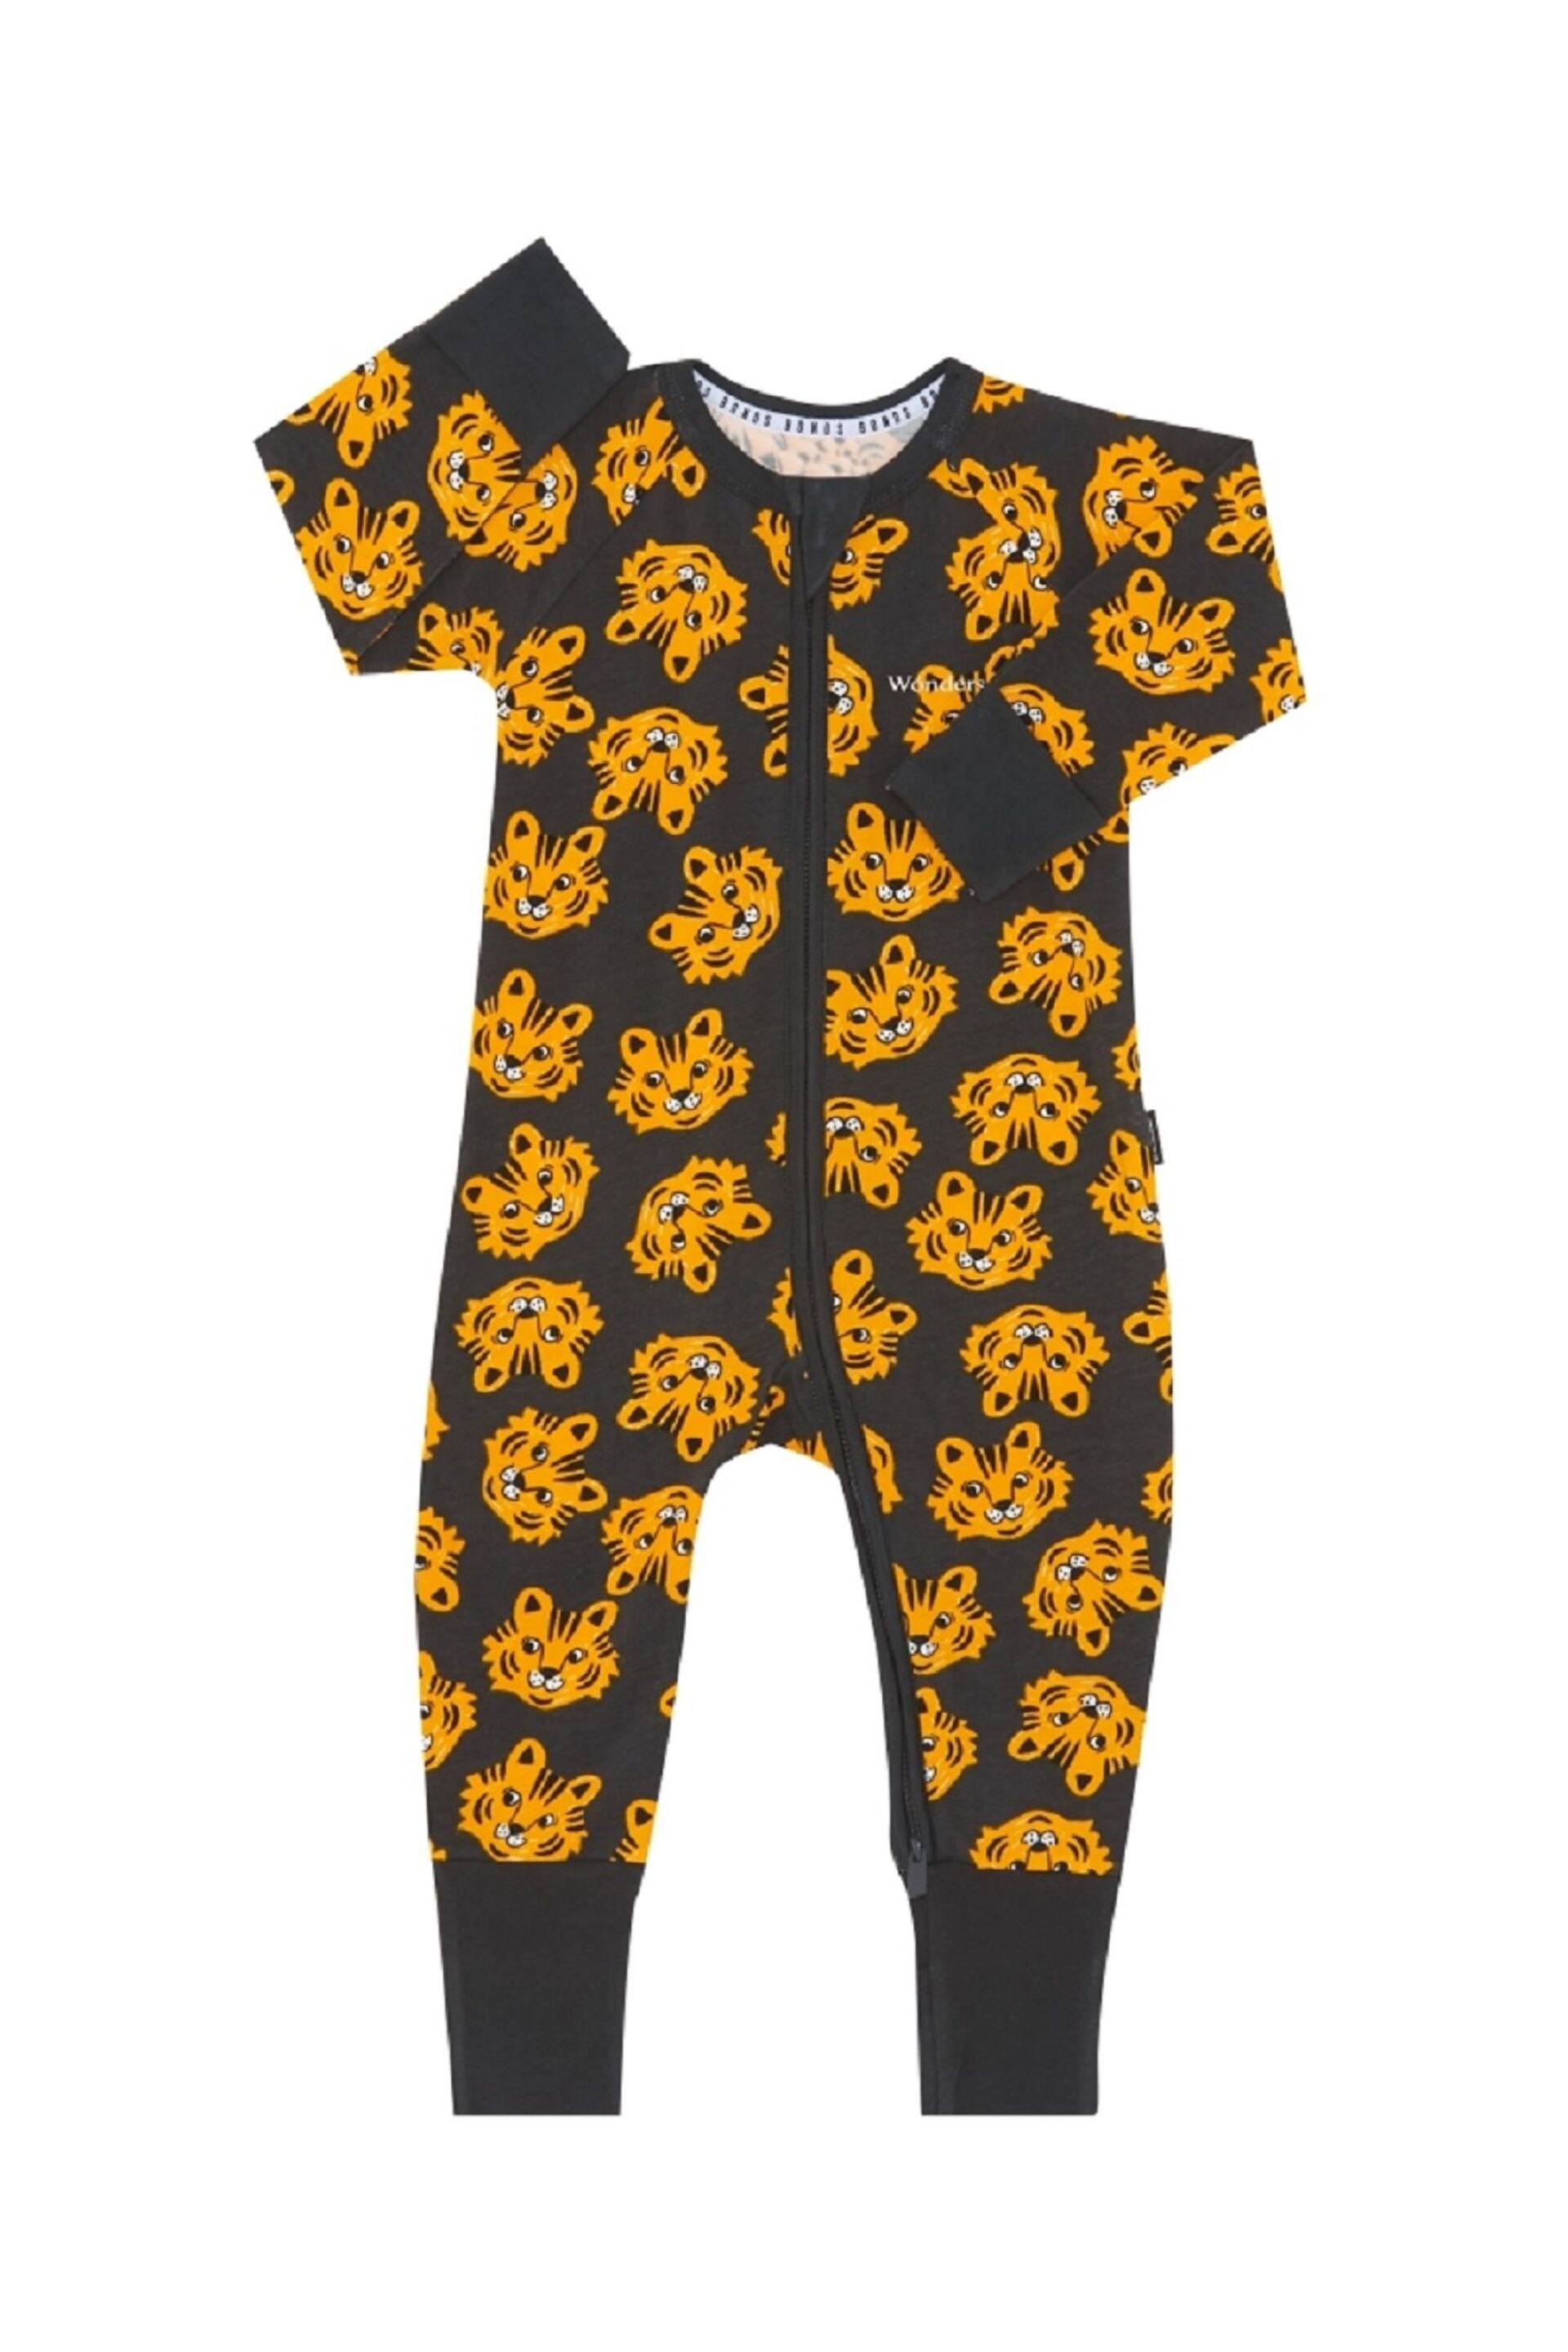 Bonds Grey Leopard Face Print Zip Sleepsuit Sleepsuit - Image 1 of 4